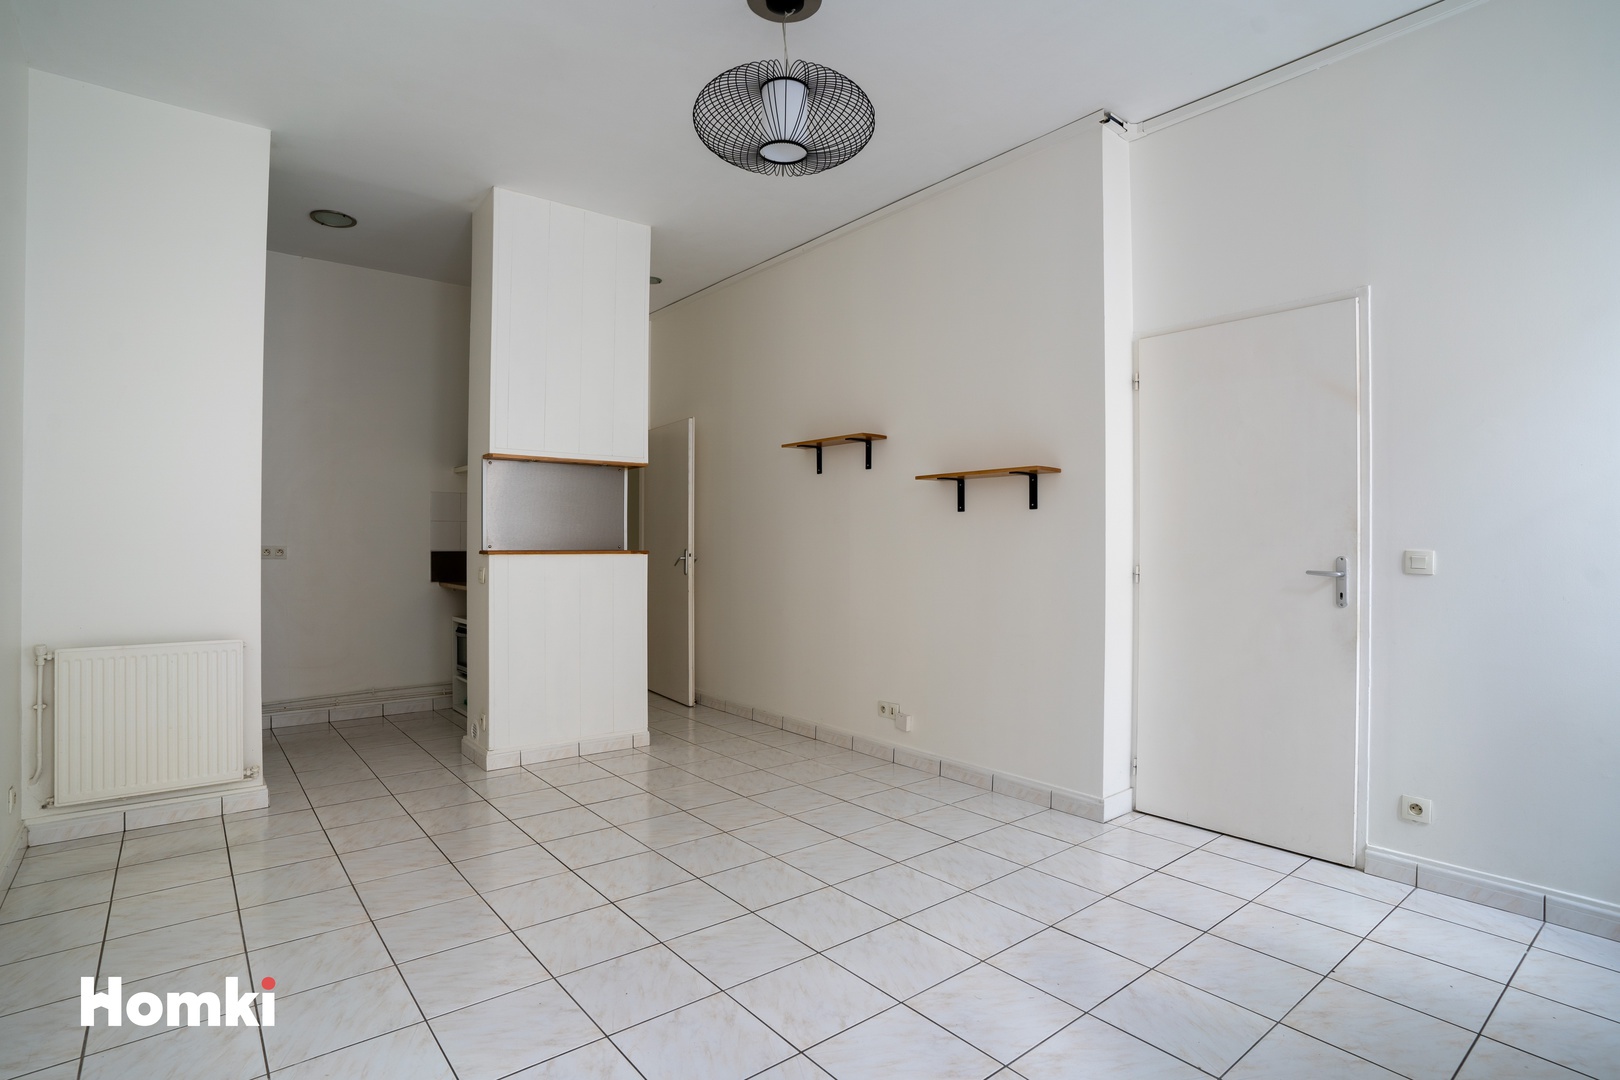 Homki - Vente Appartement  de 40.0 m² à Bordeaux 33300